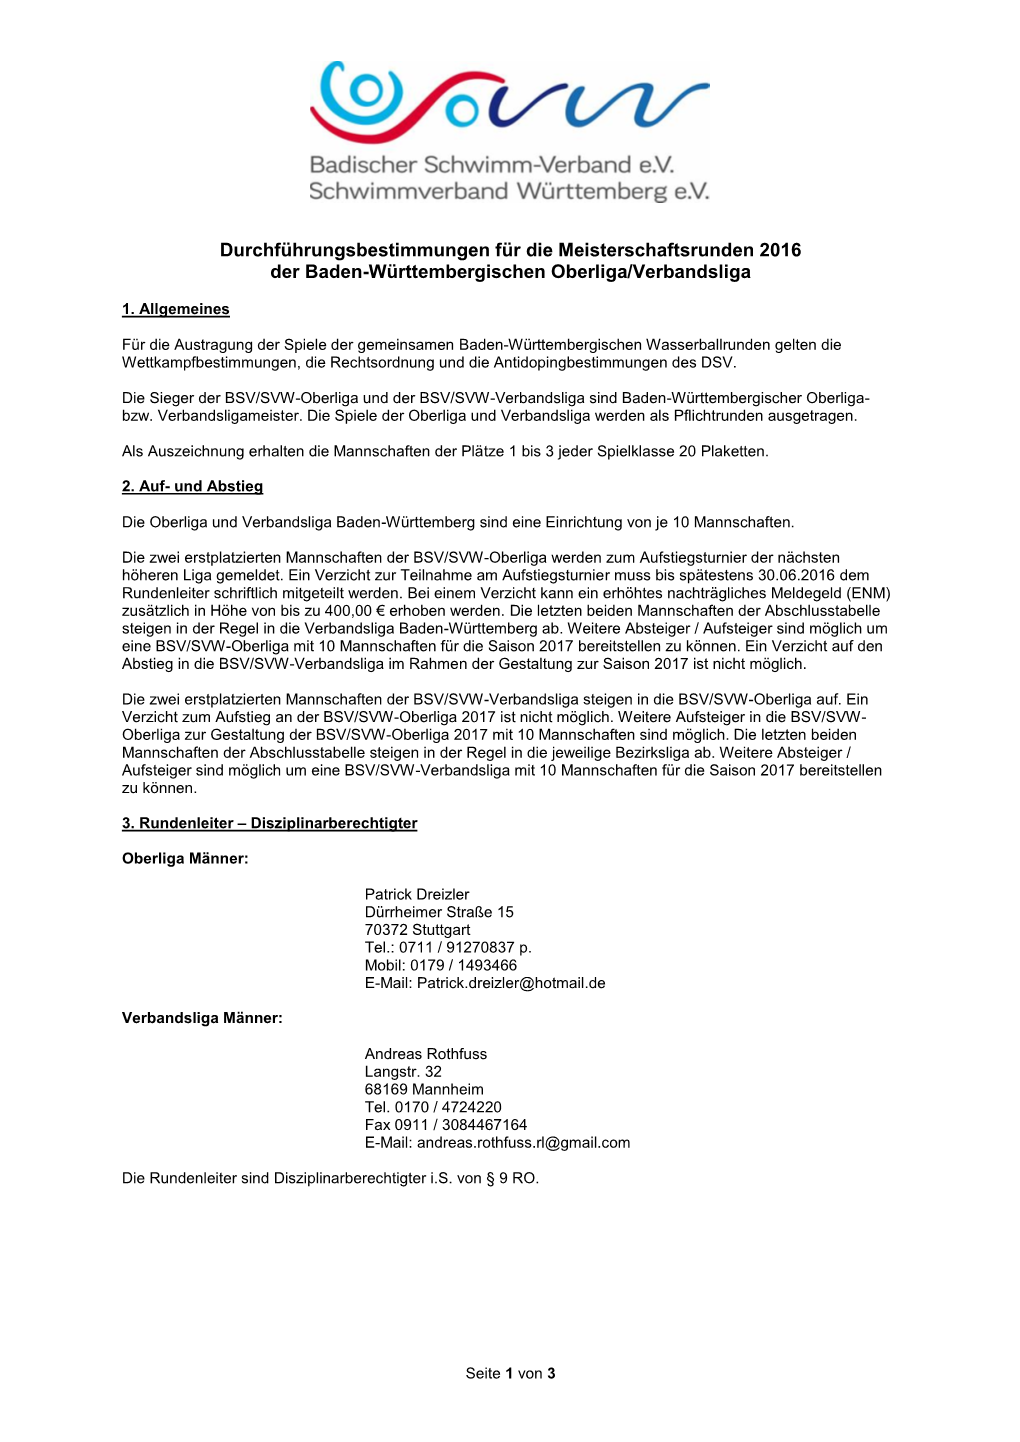 Durchführungsbestimmungen Für Die Meisterschaftsrunden 2016 Der Baden-Württembergischen Oberliga/Verbandsliga